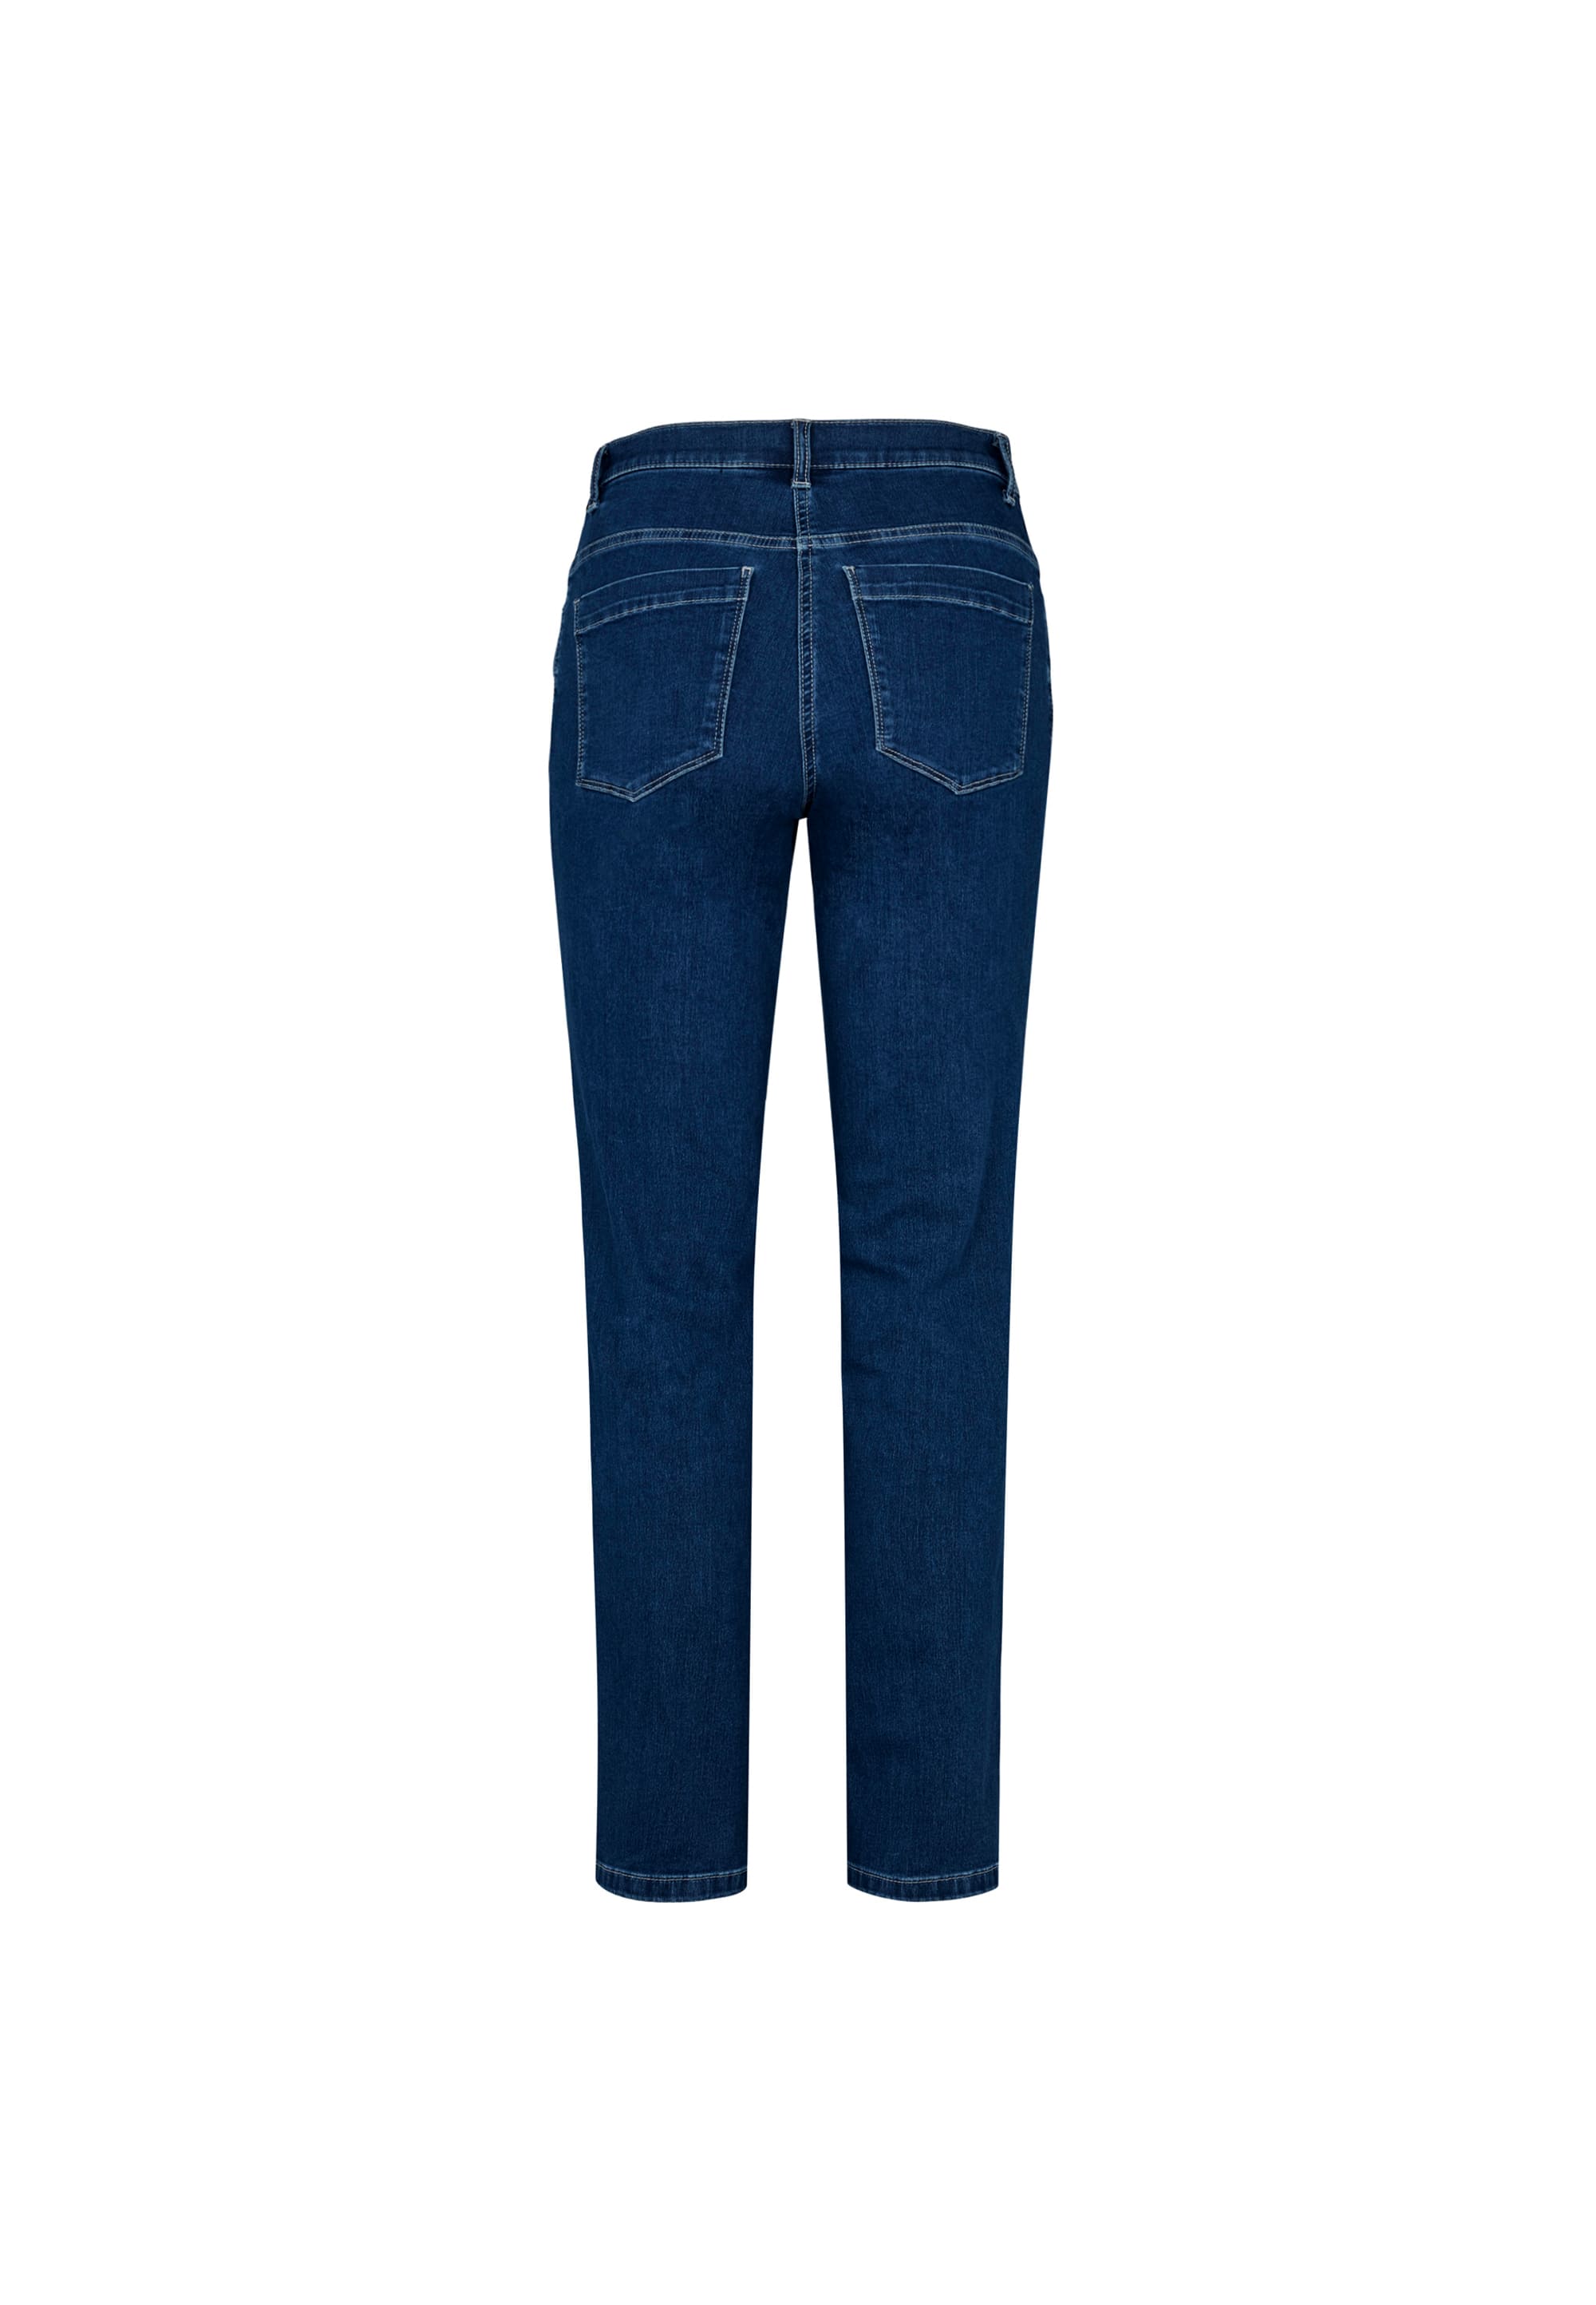 LAURIE  Charlotte Regular - Long Length Trousers REGULAR 49501 Dark Blue Denim